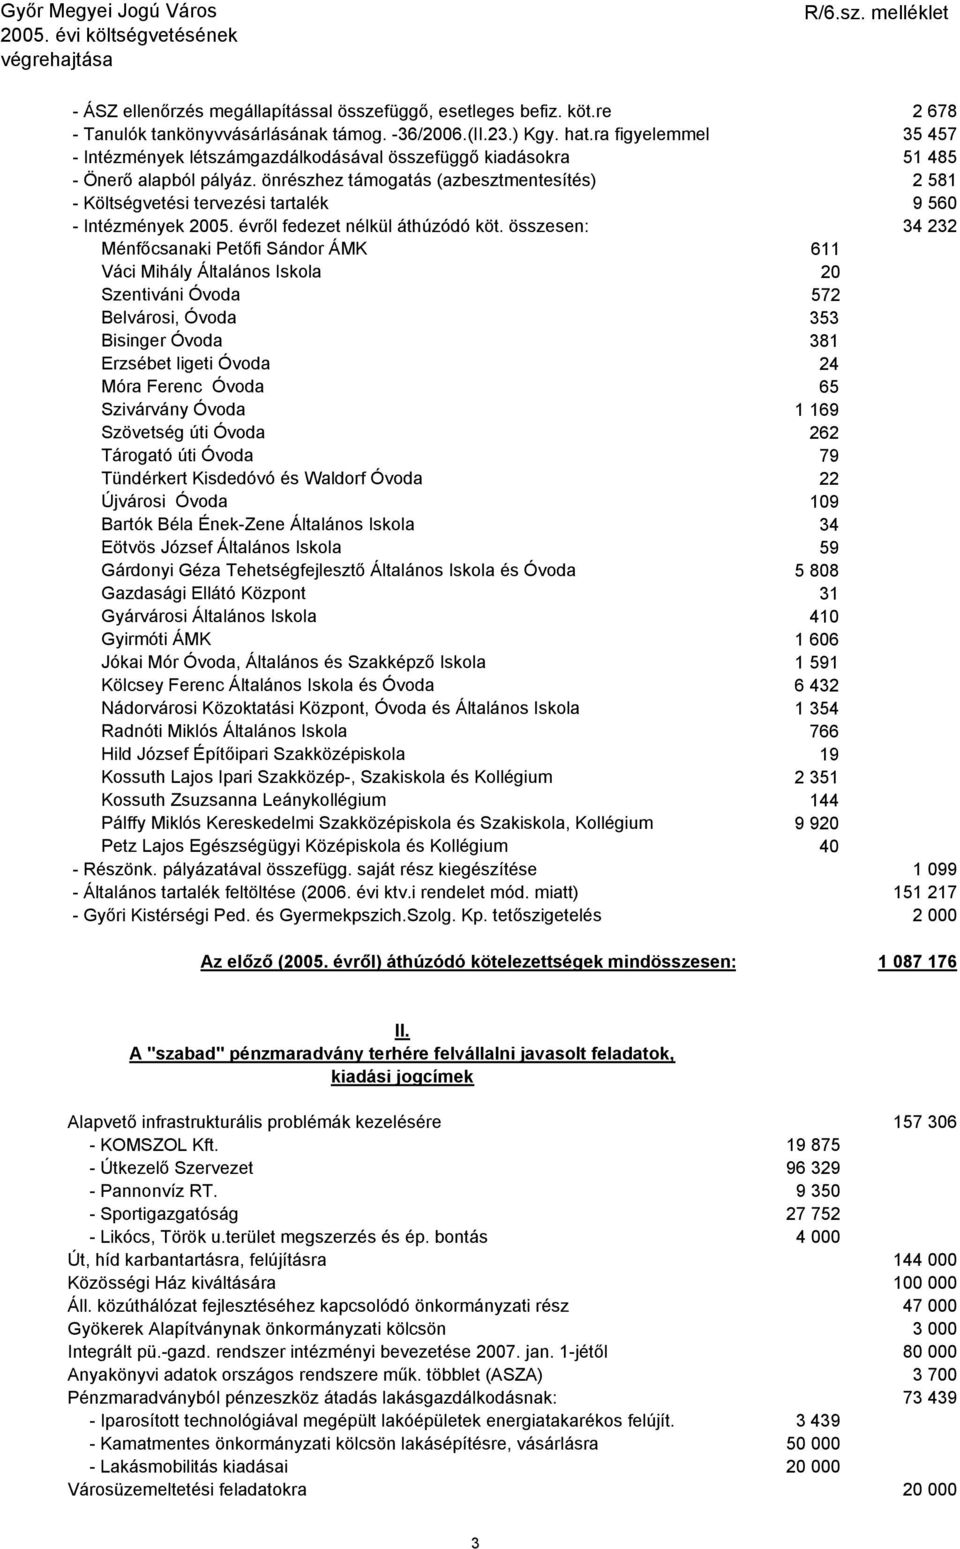 önrészhez támogatás (azbesztmentesítés) 2 581 - Költségvetési tervezési tartalék 9 560 - Intézmények 2005. évről fedezet nélkül áthúzódó köt.